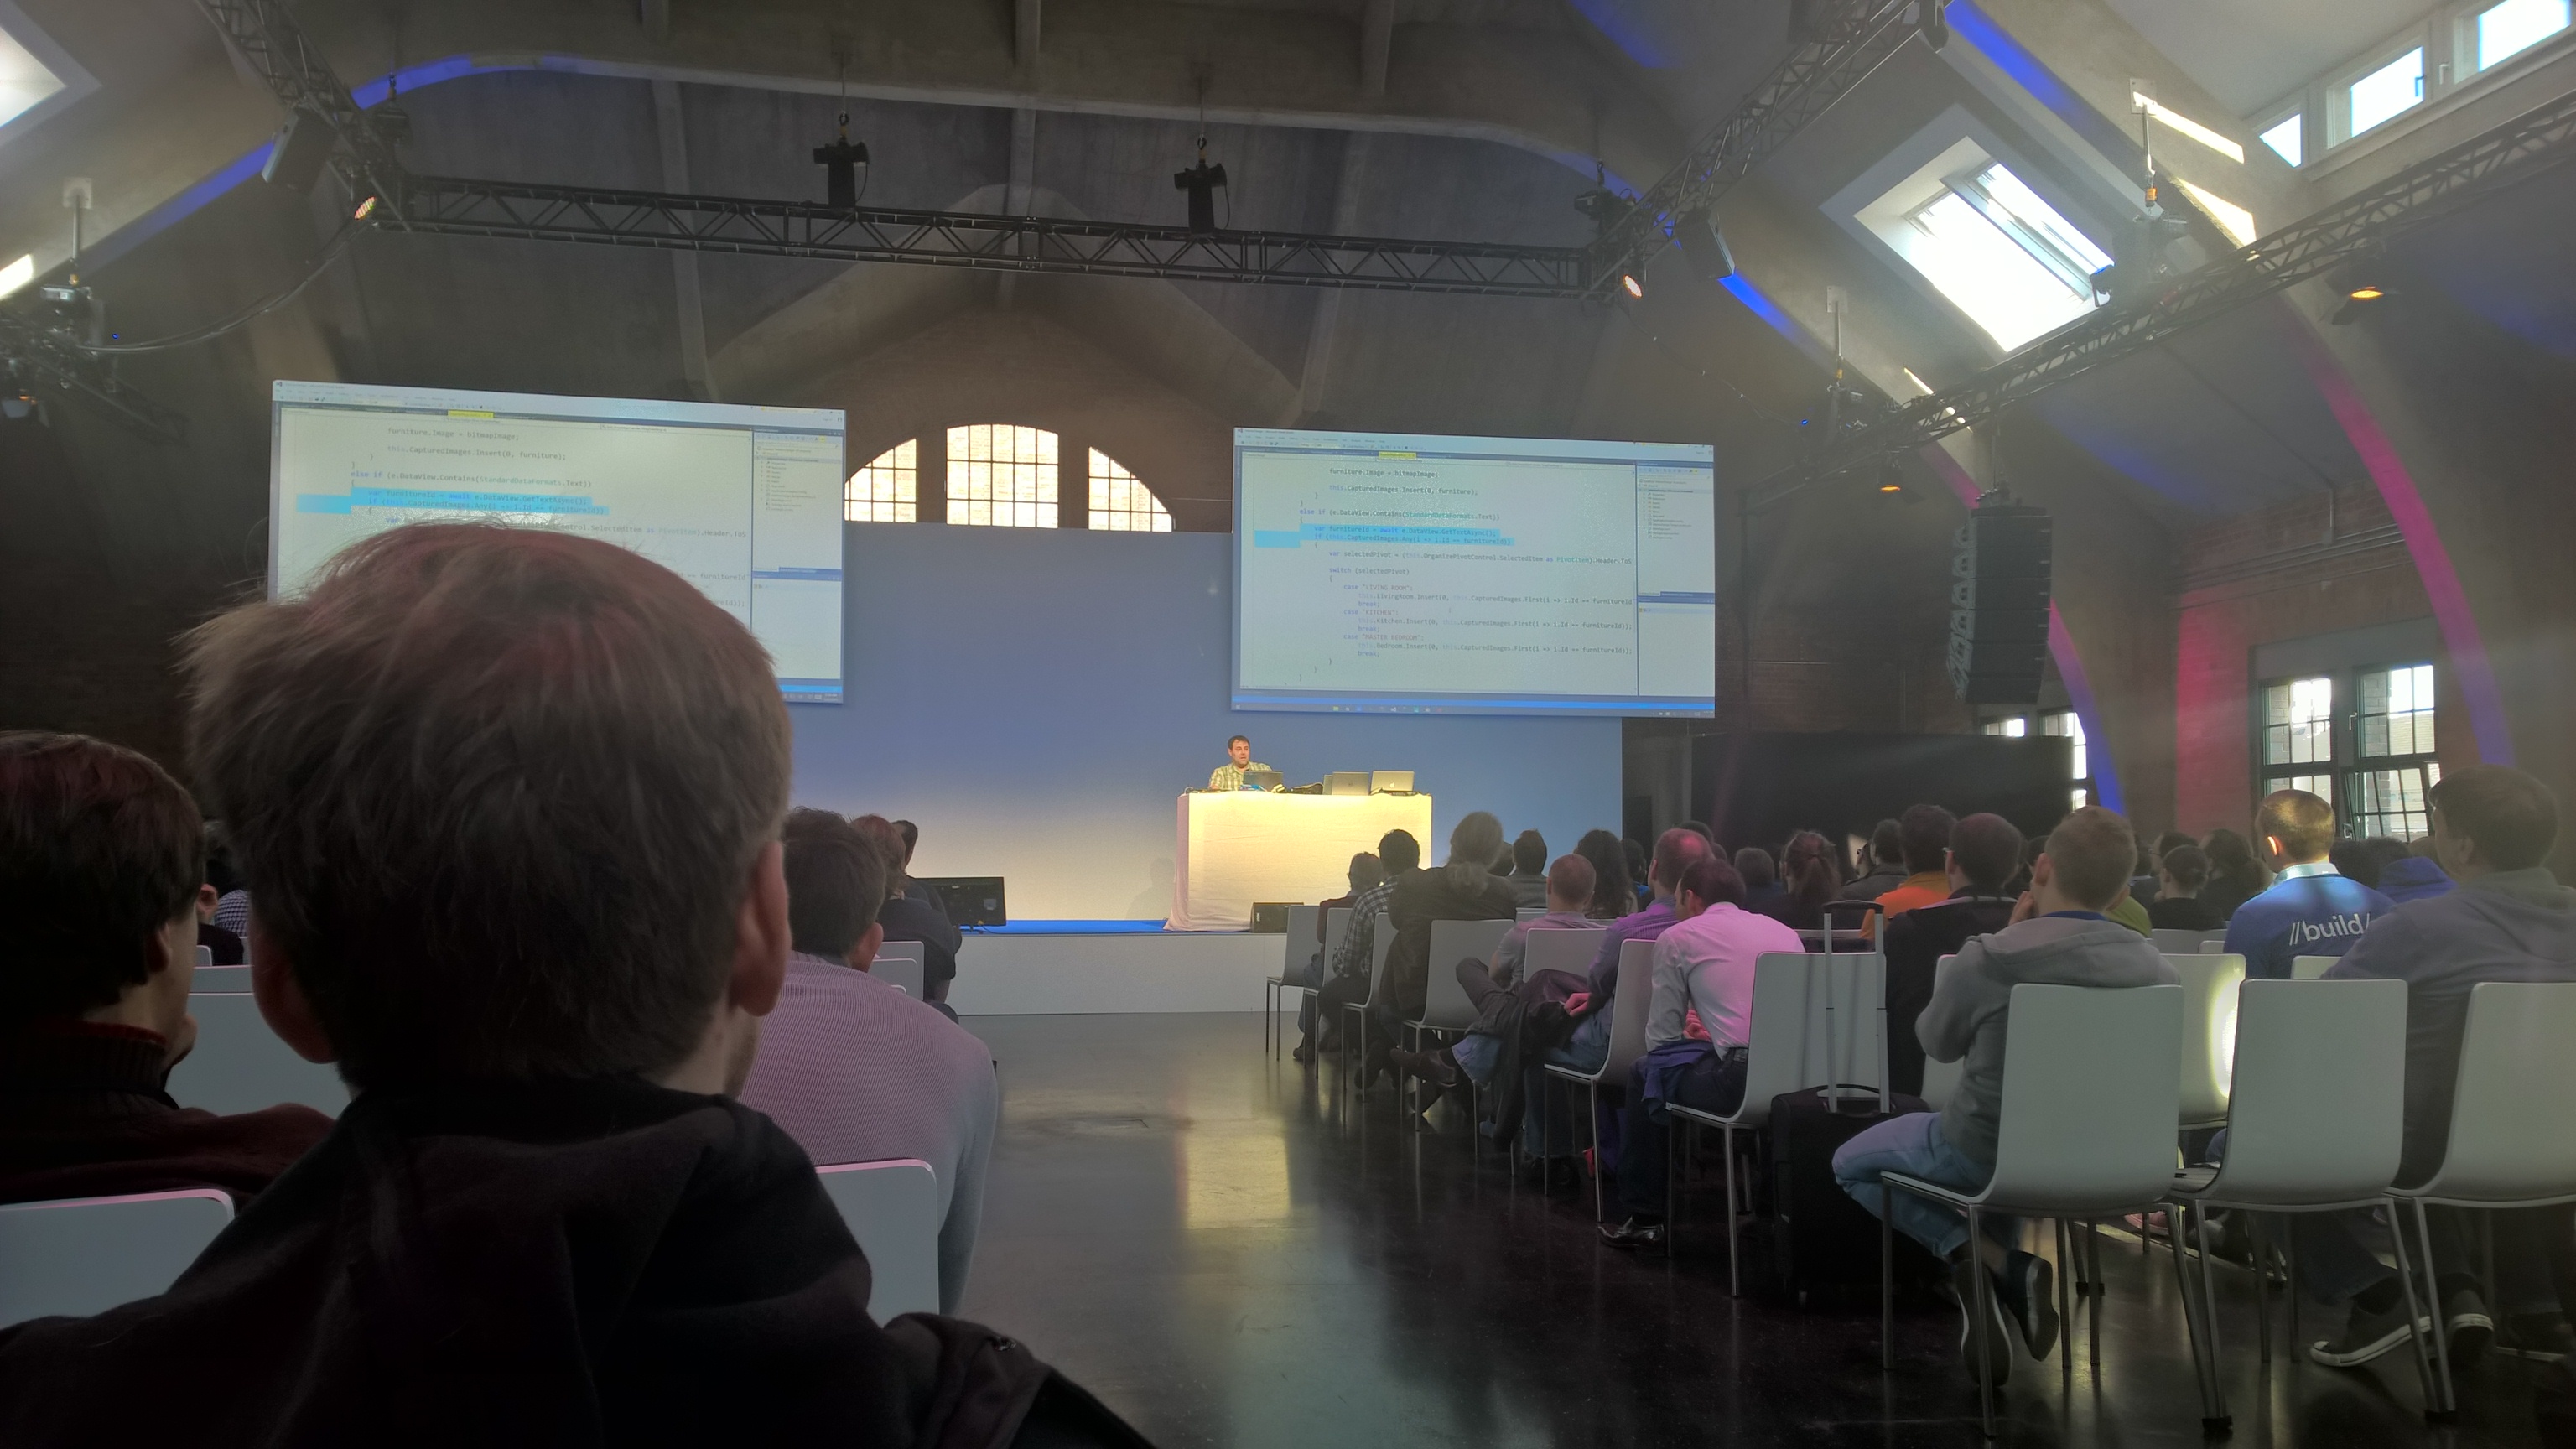 Eindrücke von der Microsoft-Developerkonferenz “Build” in Berlin